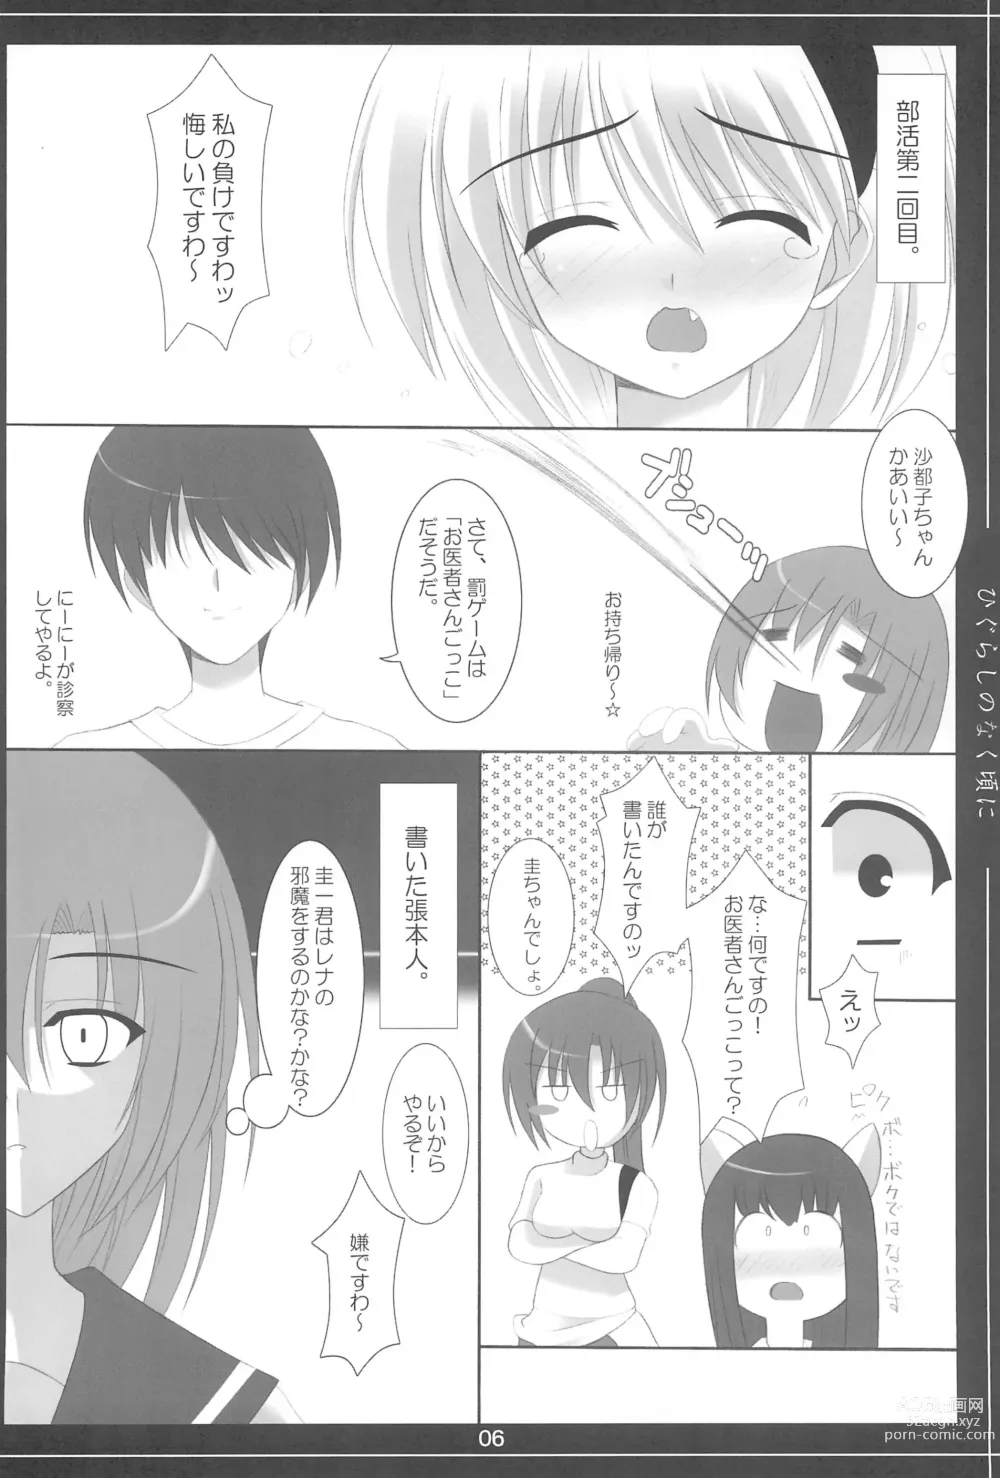 Page 6 of doujinshi Mei